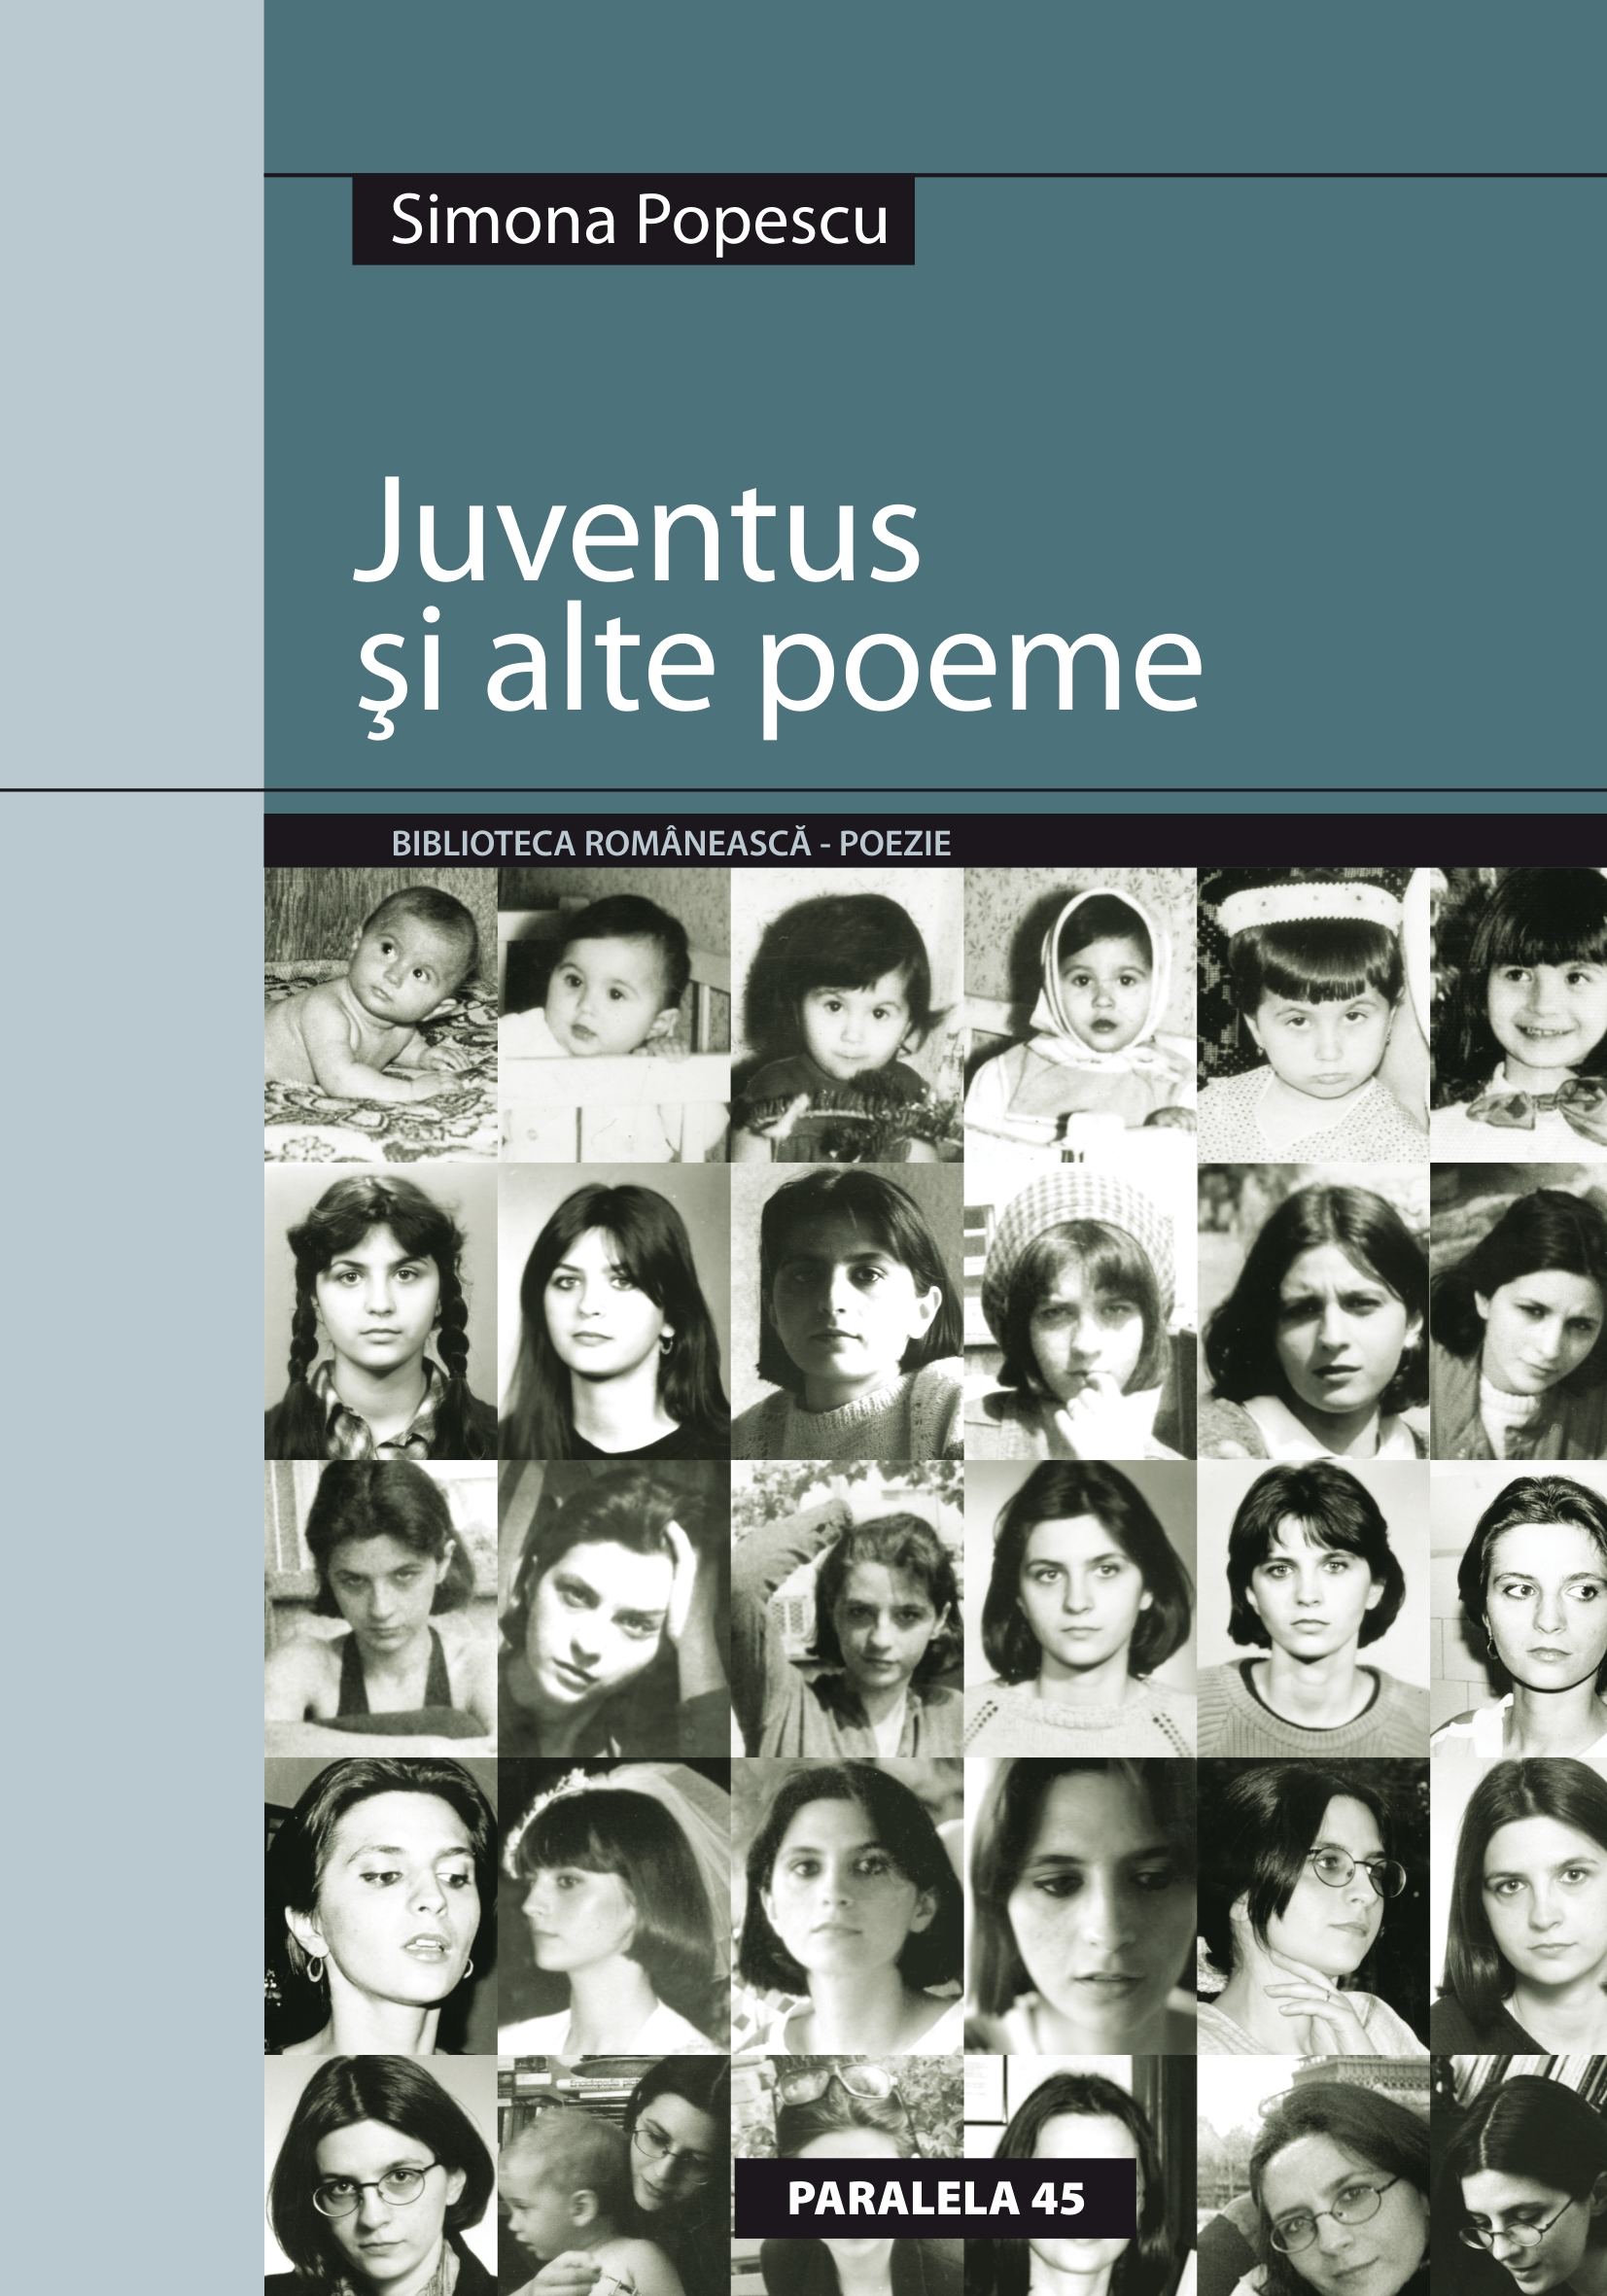 Coperta volumului Juventus si alte poeme